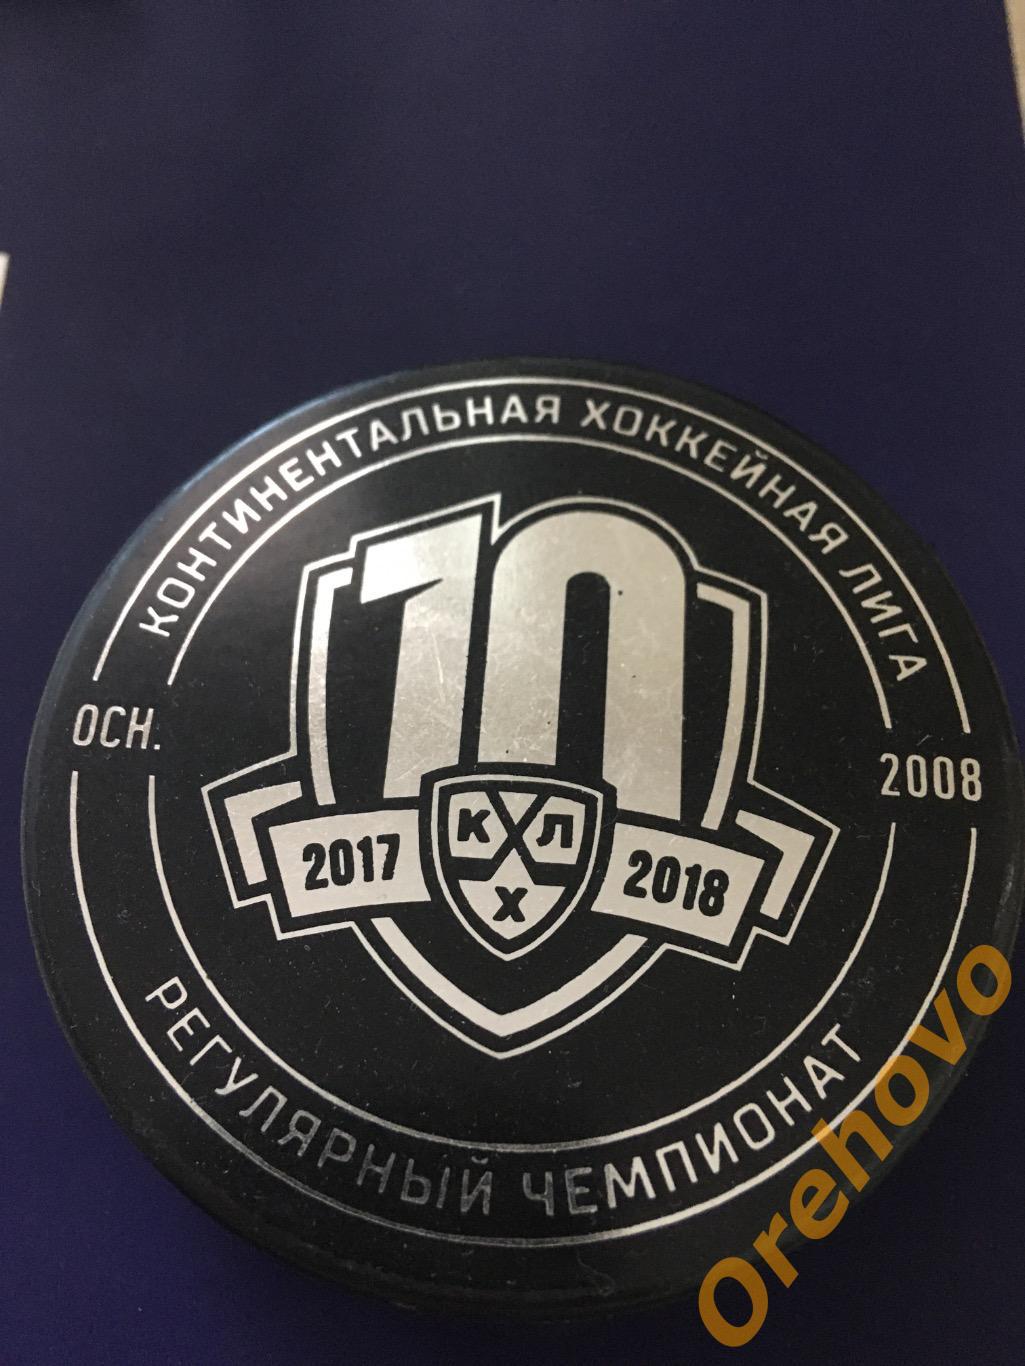 Шайба хоккейная КХЛ 2017-2018 sogaz